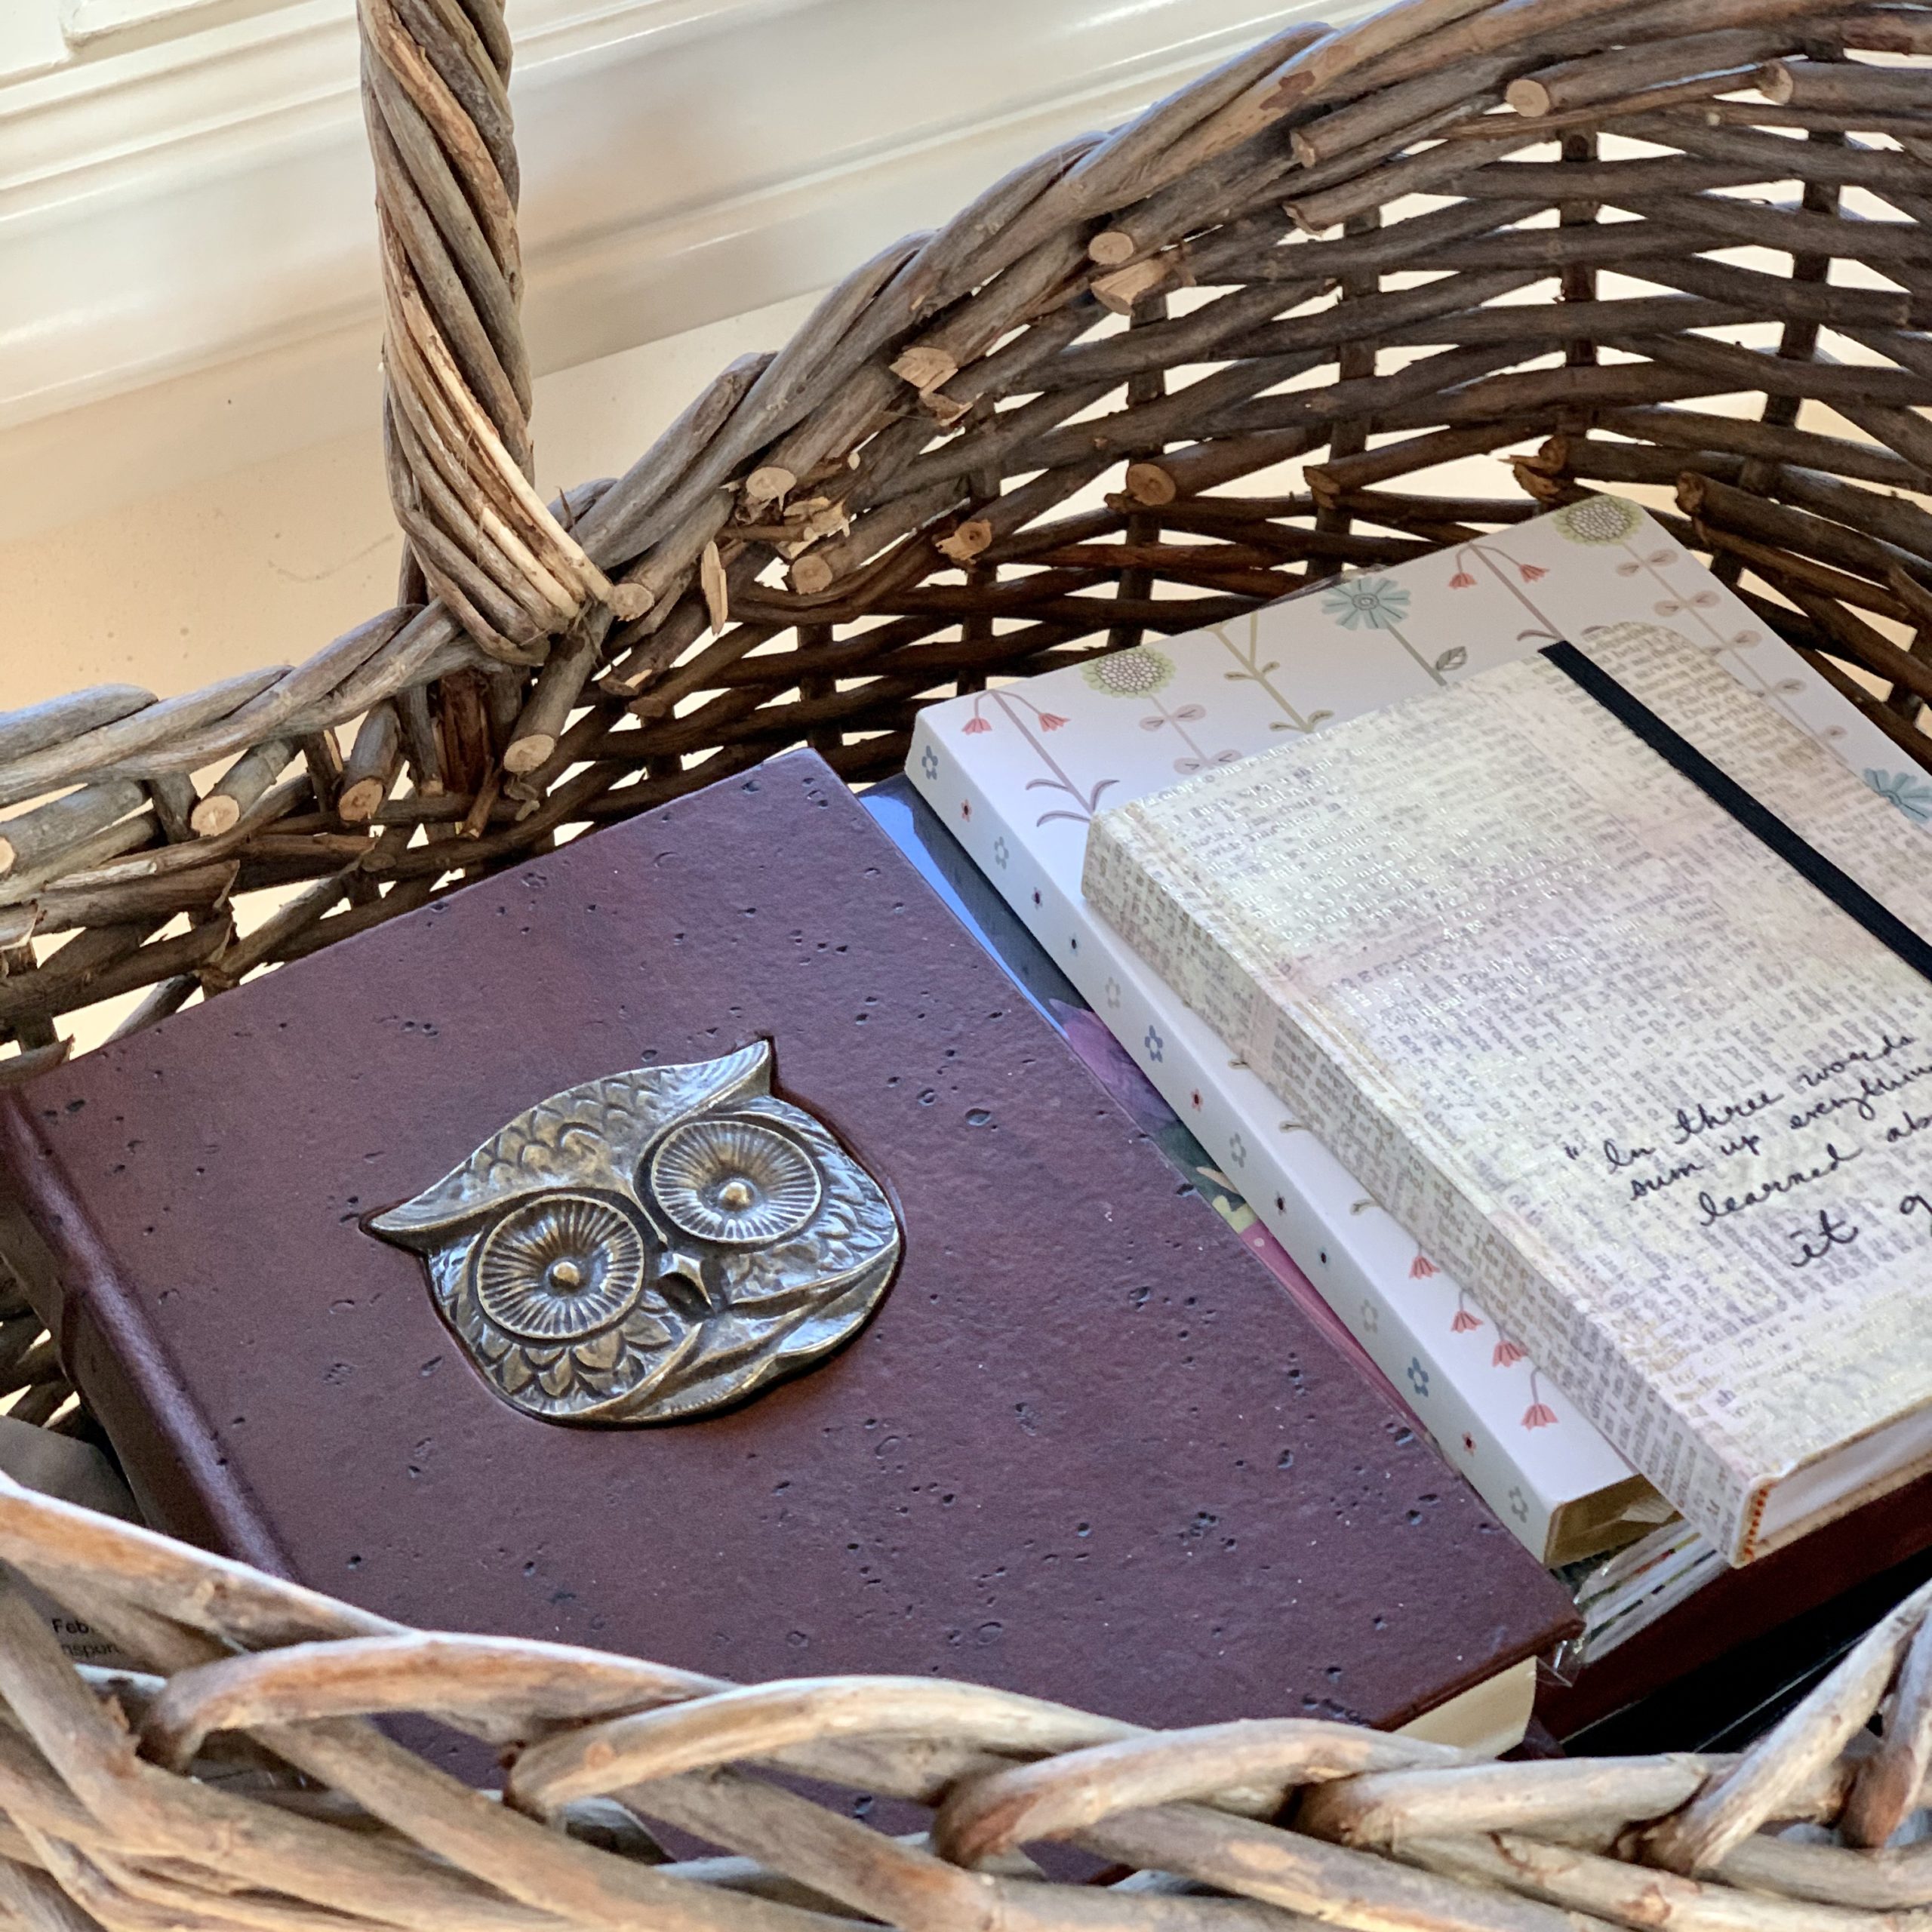 journals in a basket